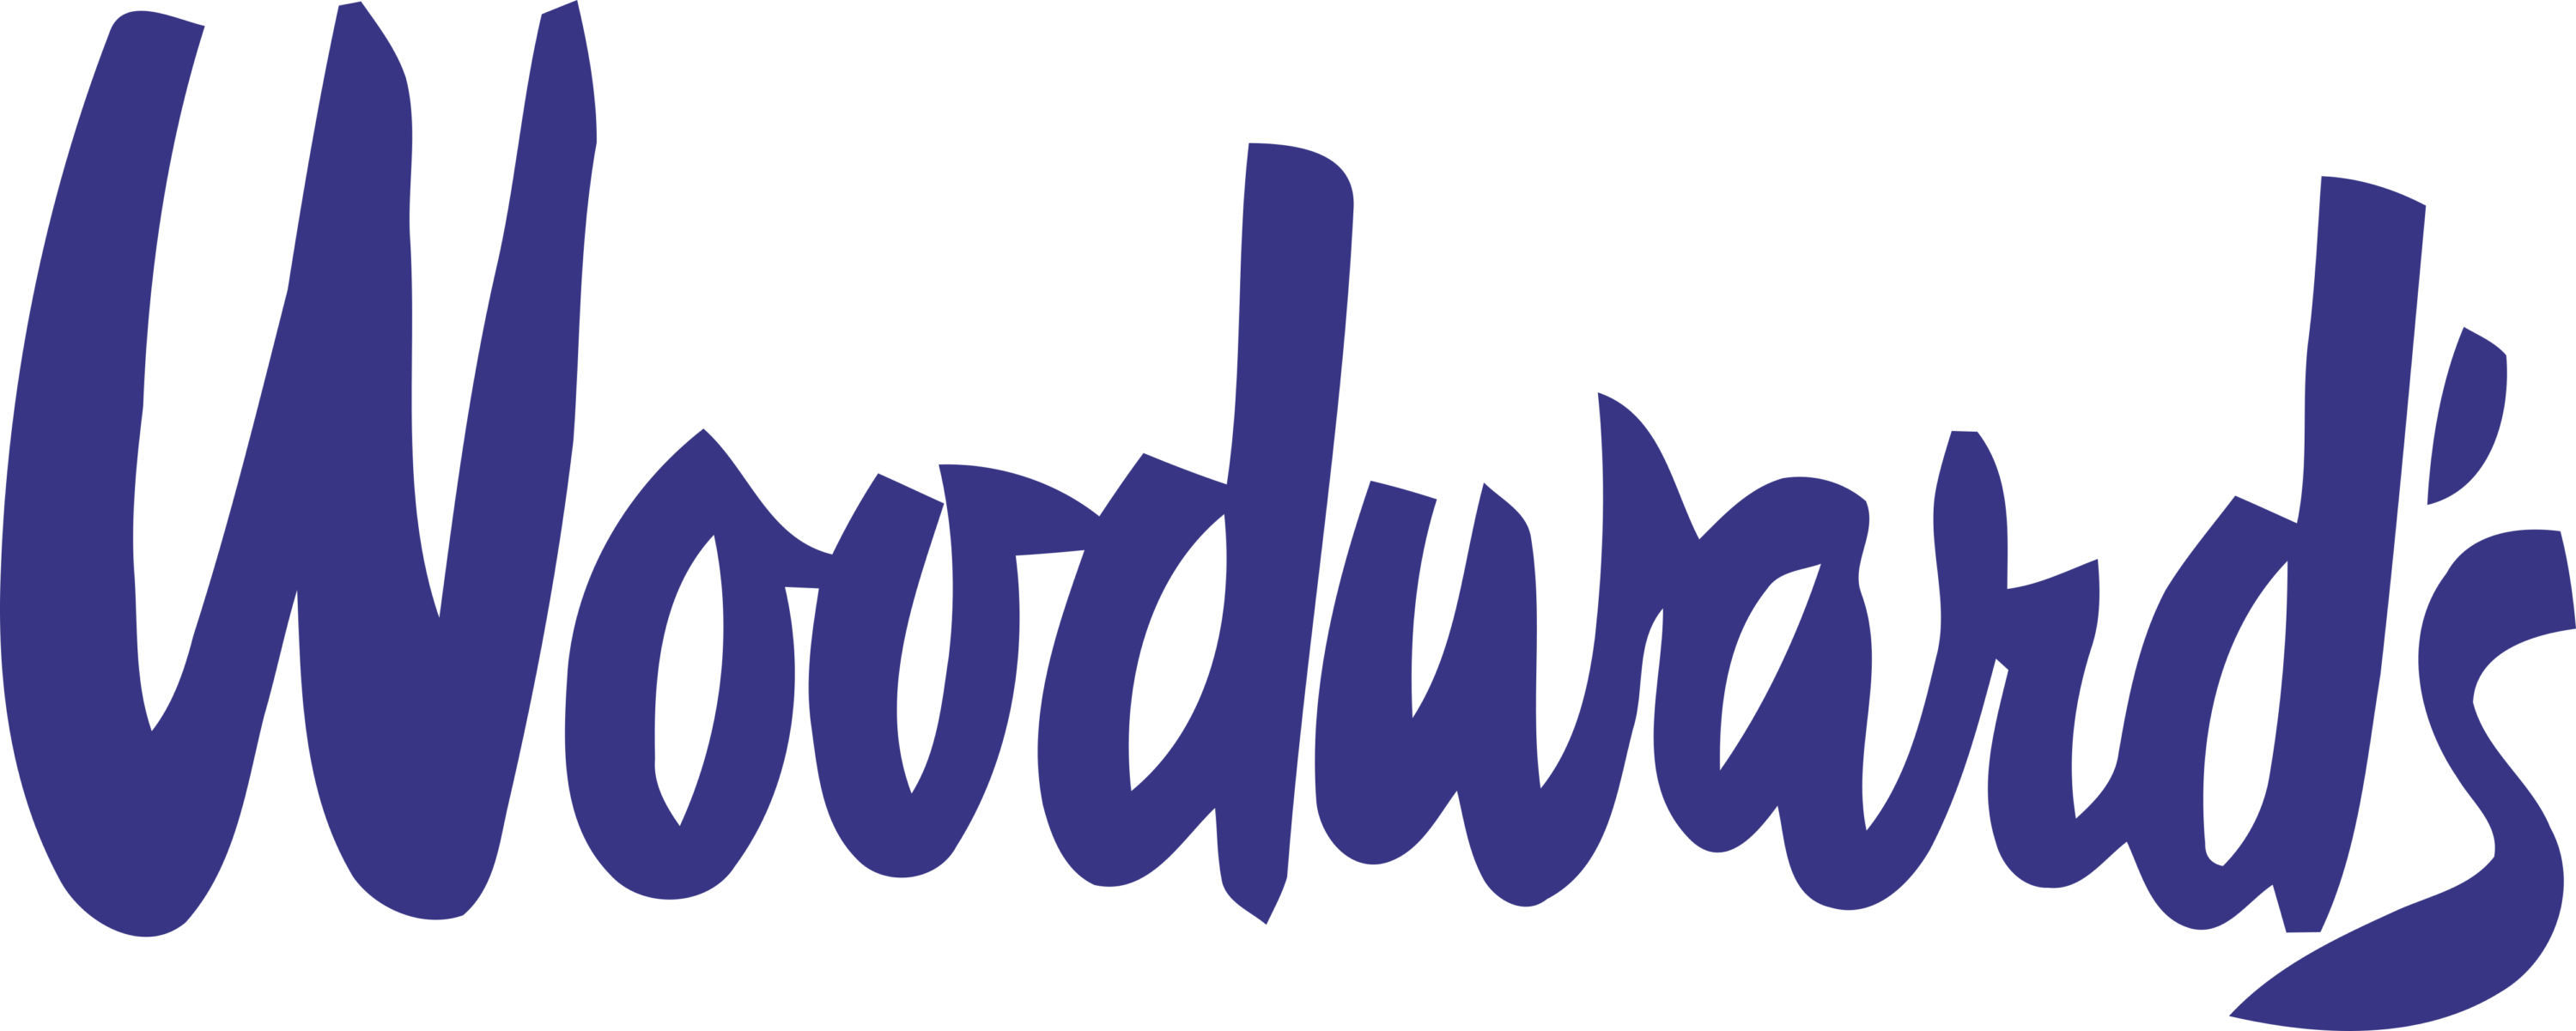 Woodwards Logo